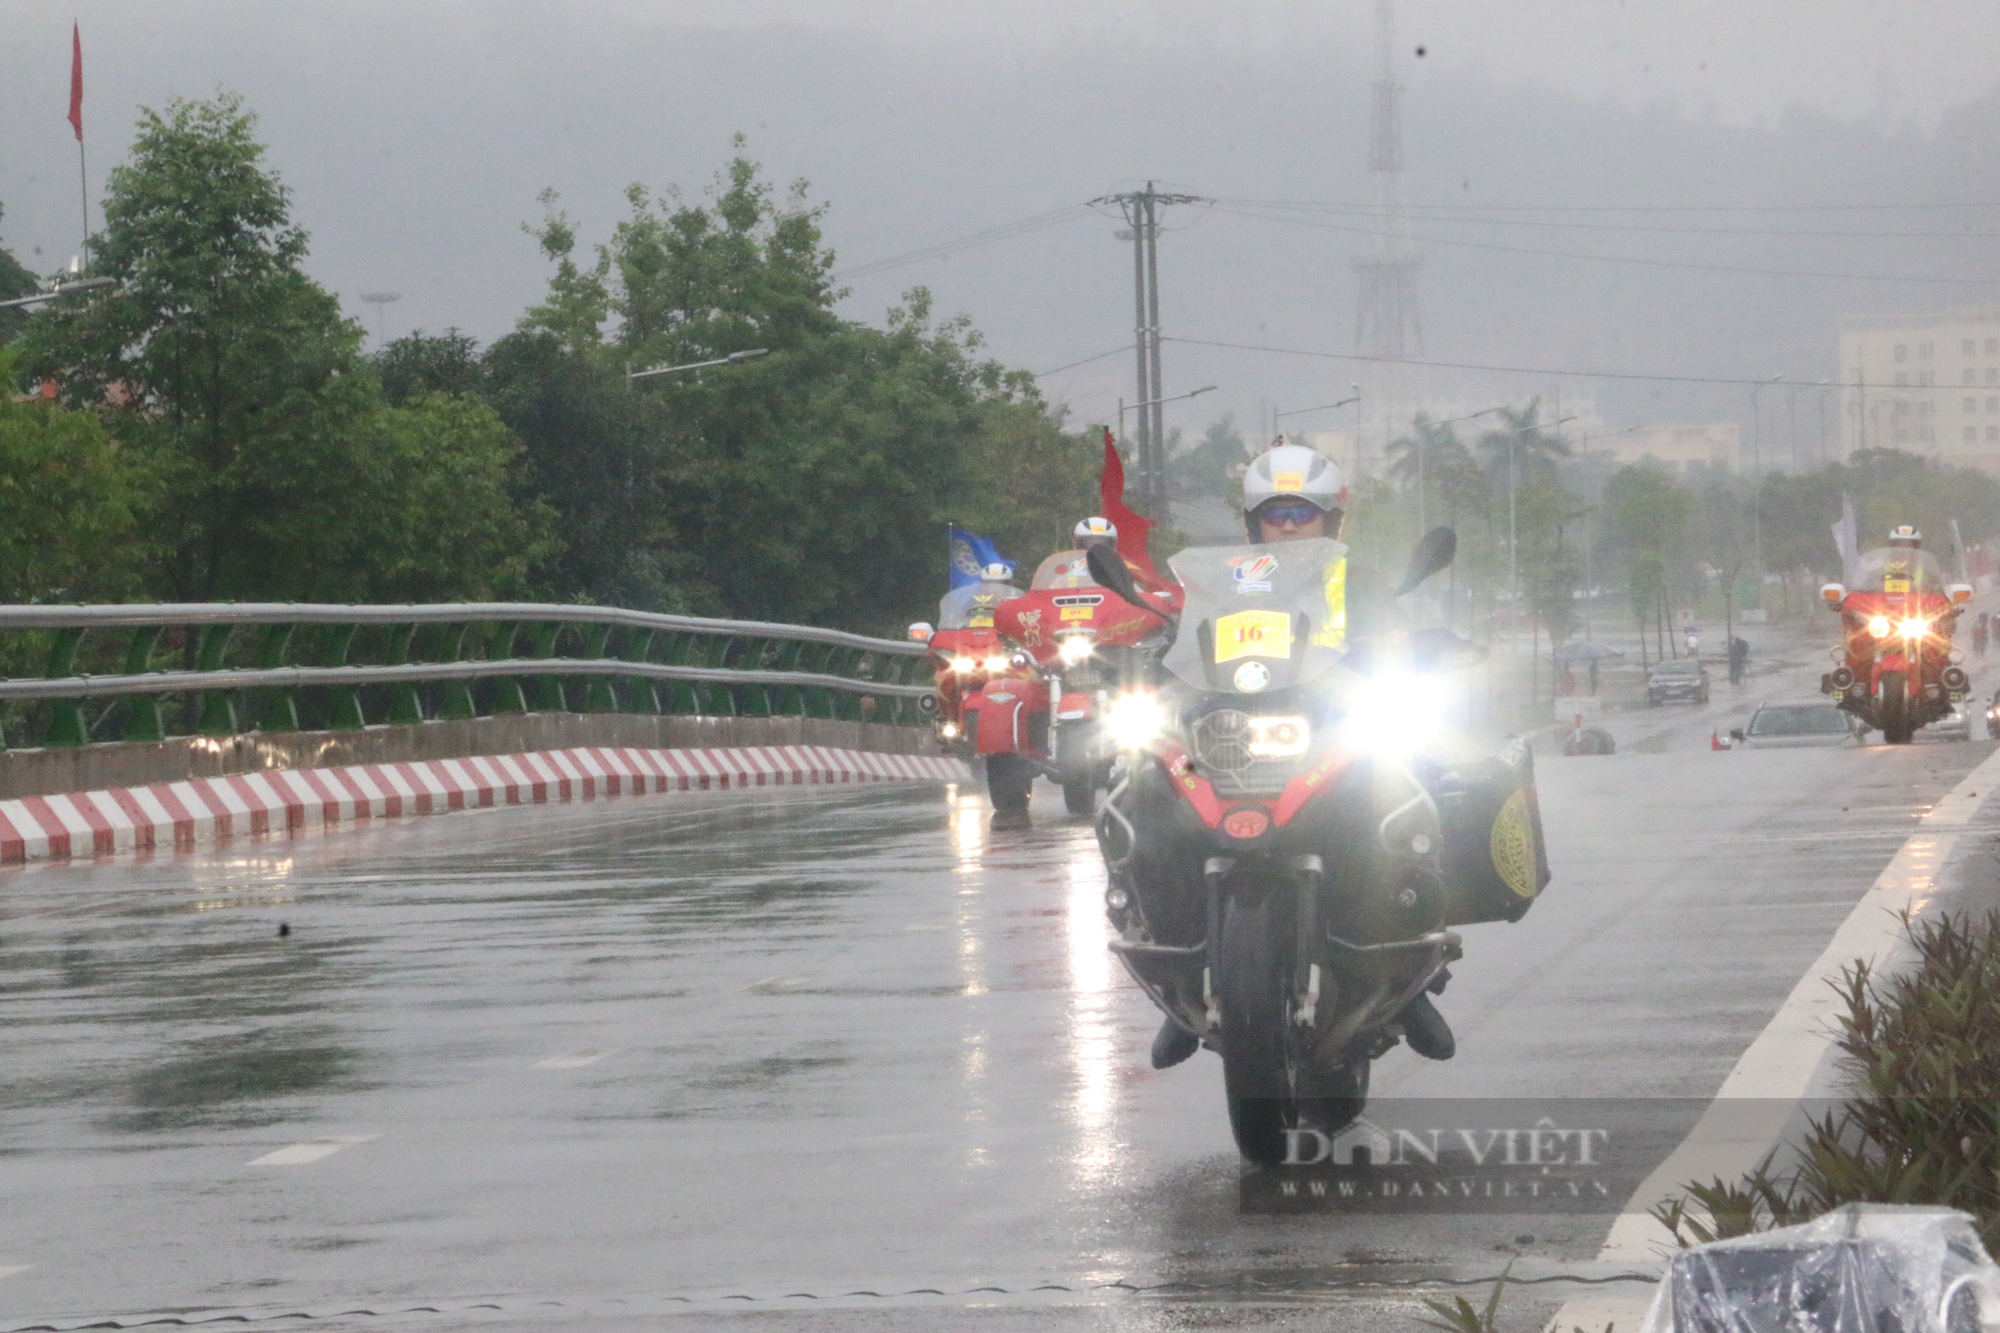  Chùm ảnh: Lực lượng CSGT Hoà Bình đầm mưa phân luồng giao thông phục vụ  - Ảnh 13.